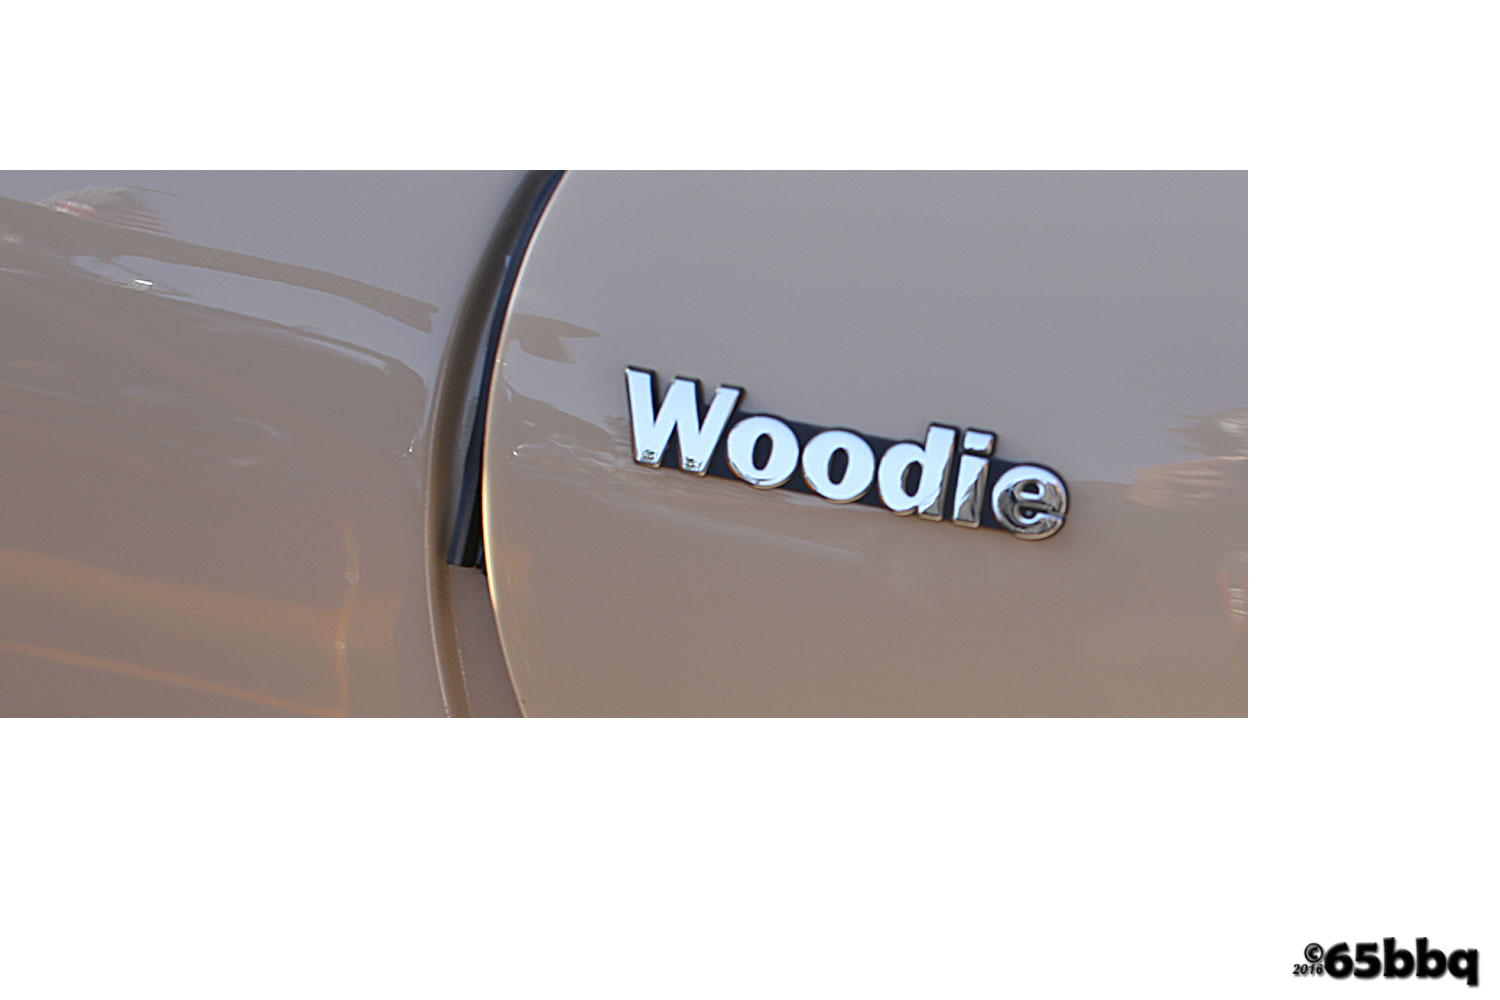 doheny-woodie-1-46-65bbq-woodie.jpg